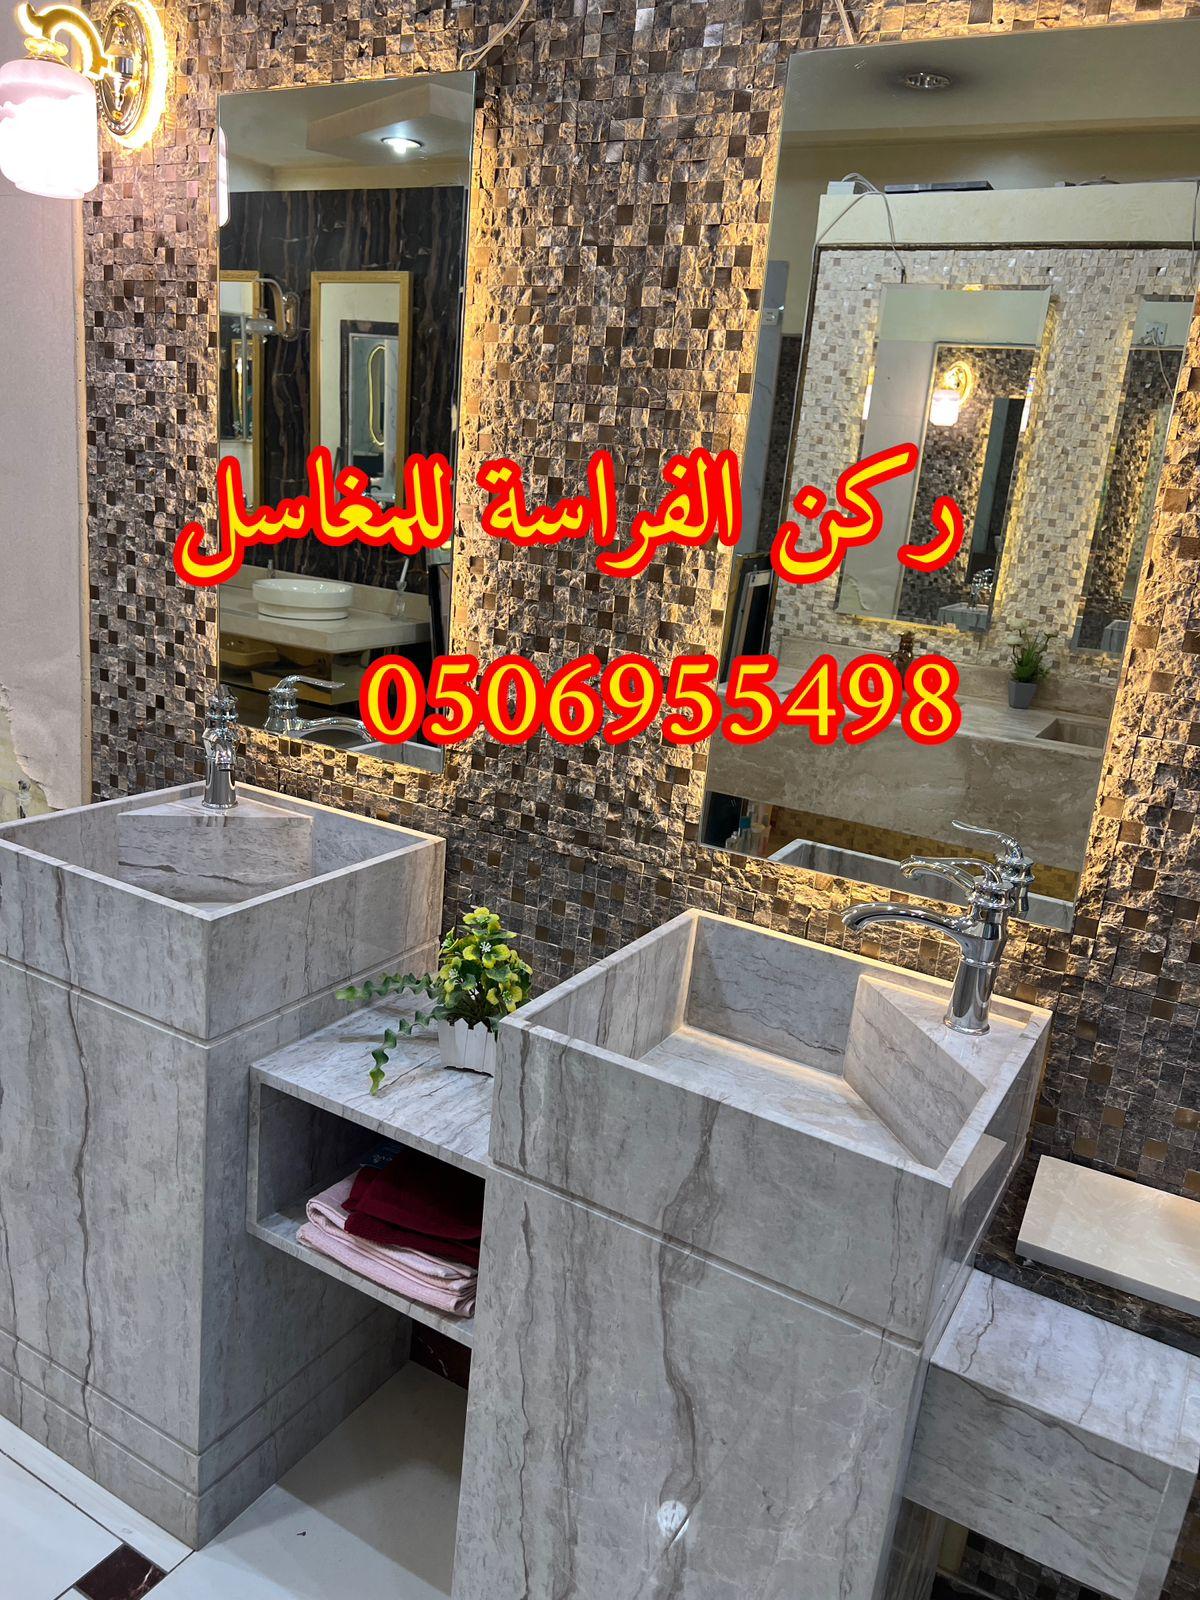 مغاسل حمامات رخام مودرن فخمة في الرياض,0506955498 392695765